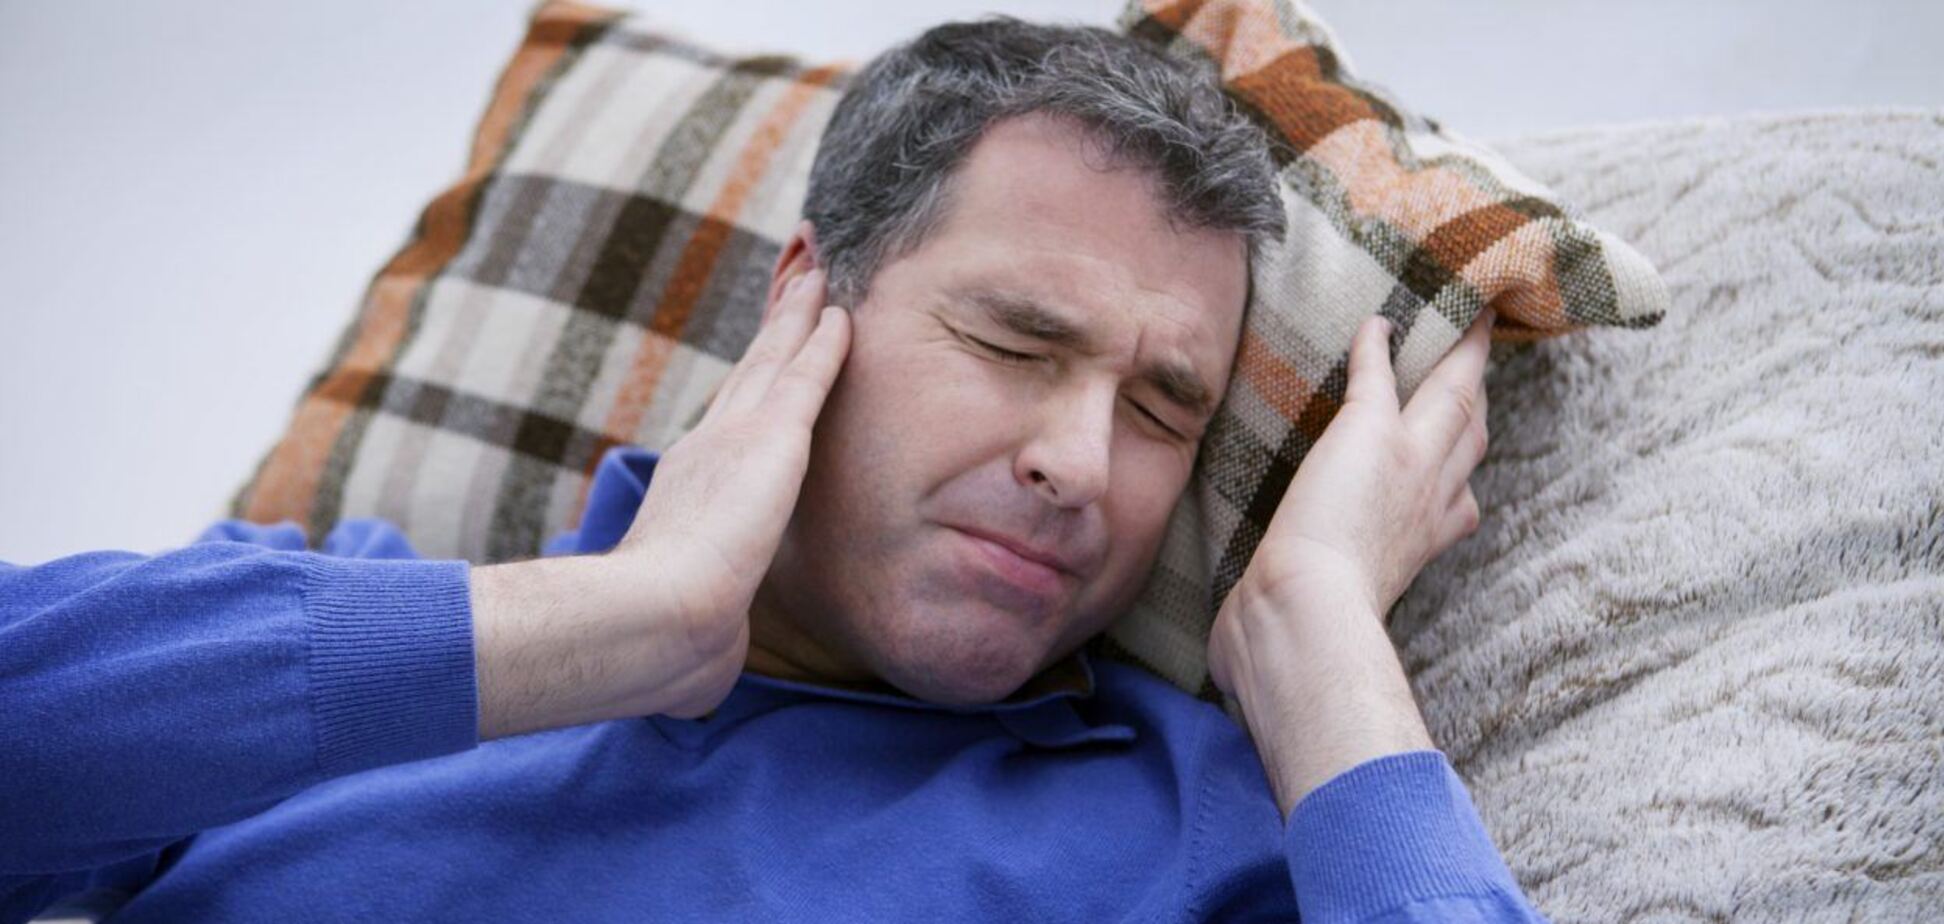 Коронавирус может усугублять проблемы со слухом, – врачи